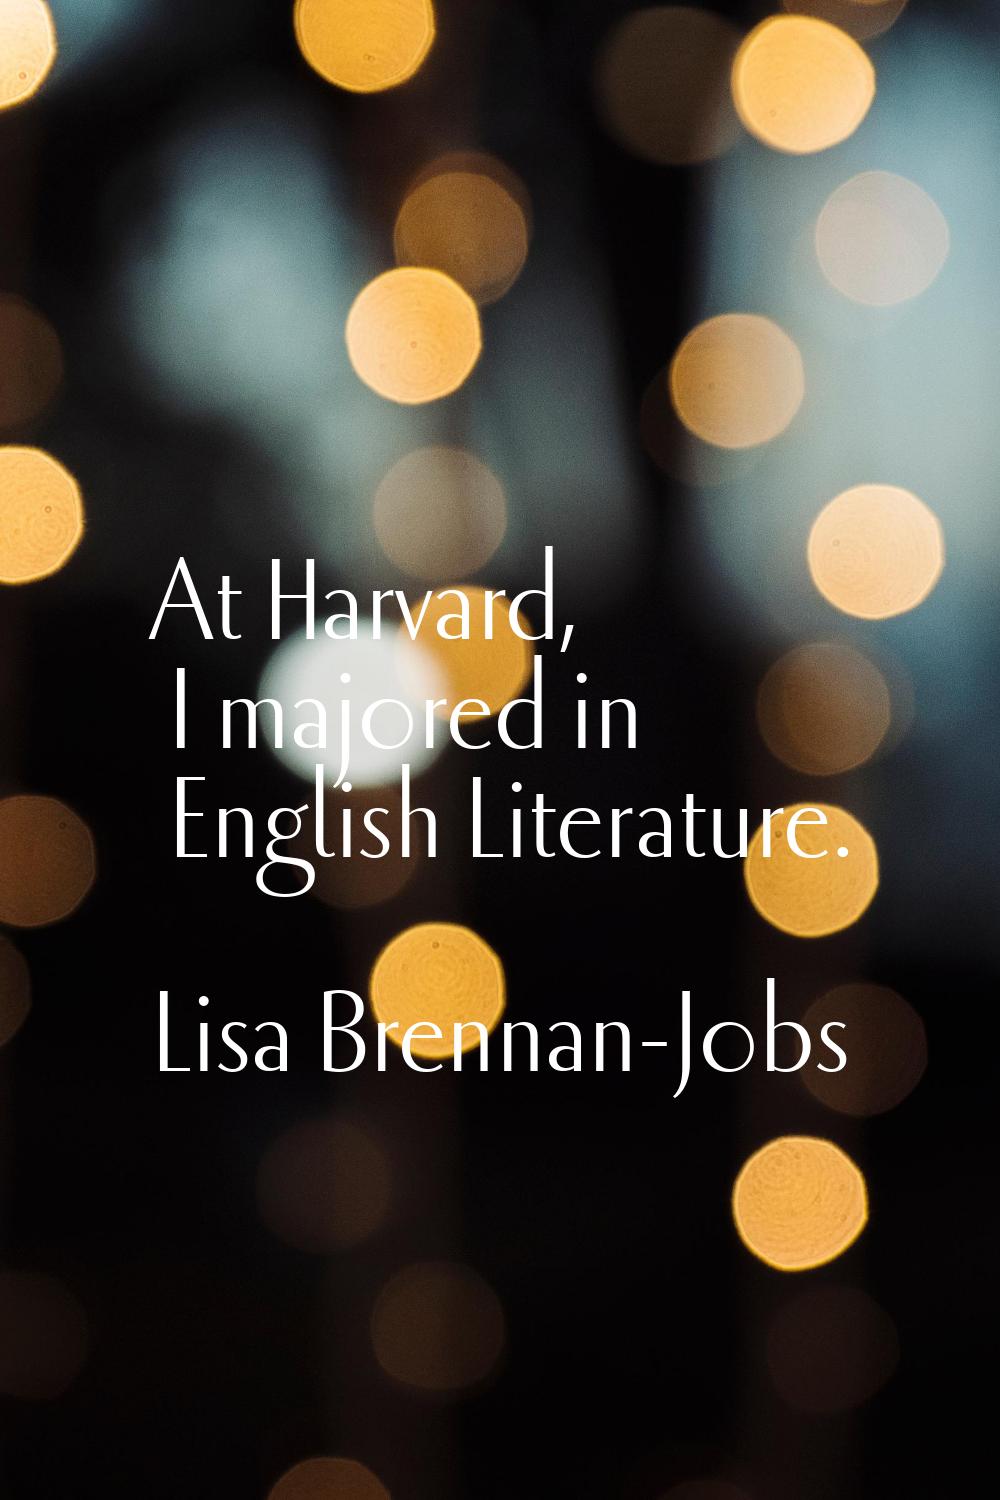 At Harvard, I majored in English Literature.